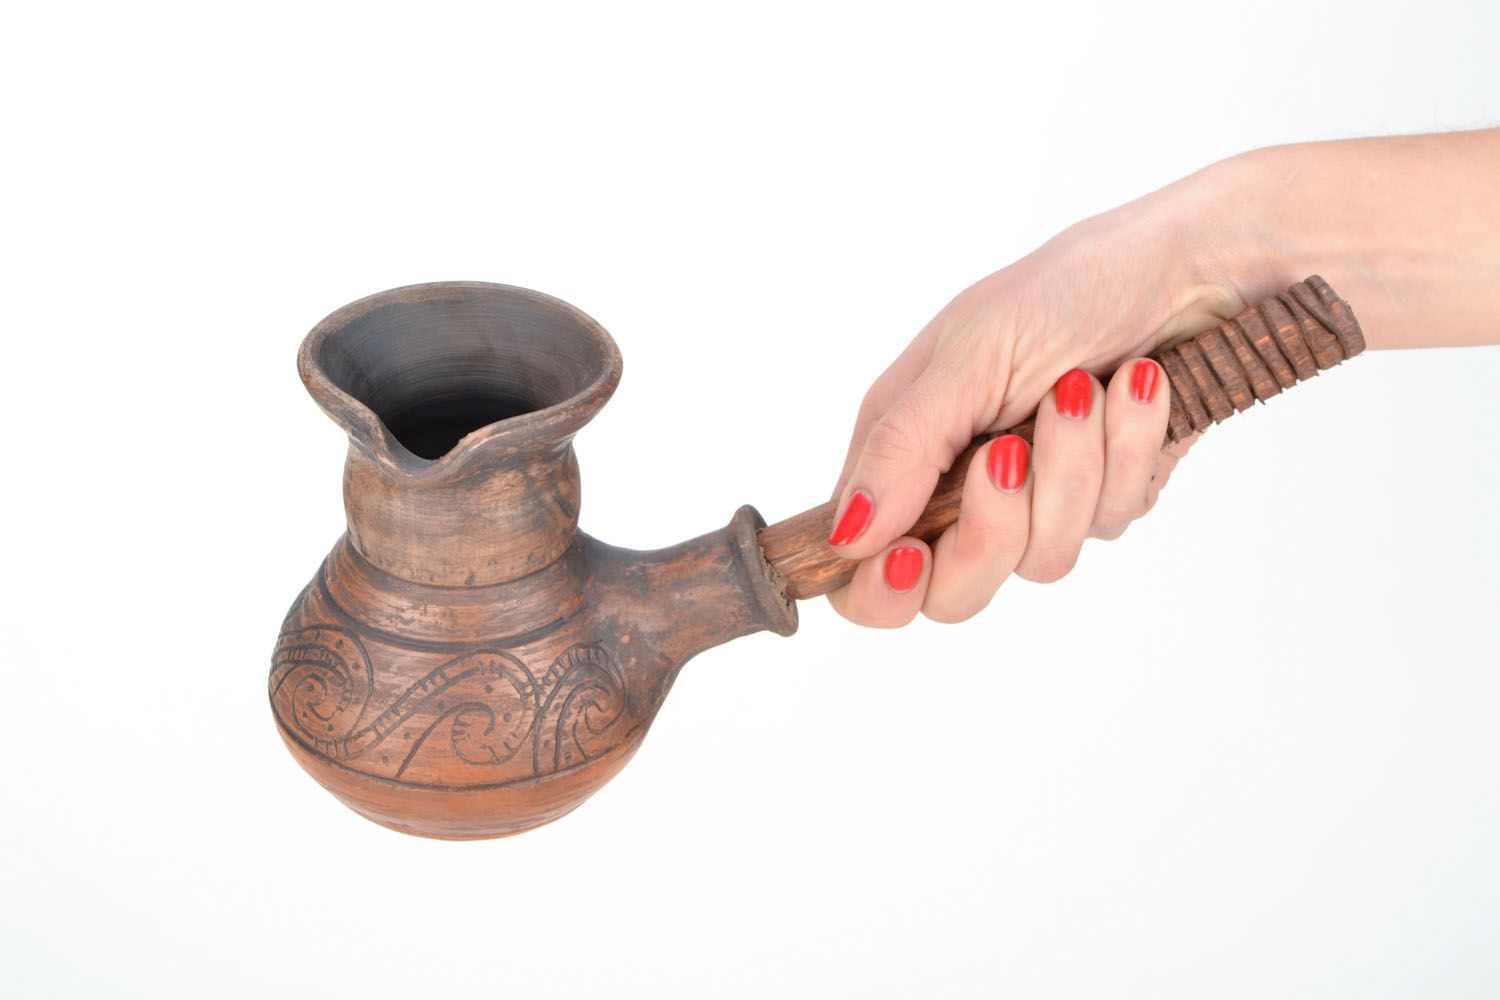 Türkischer Kaffeekocher aus Keramik foto 2